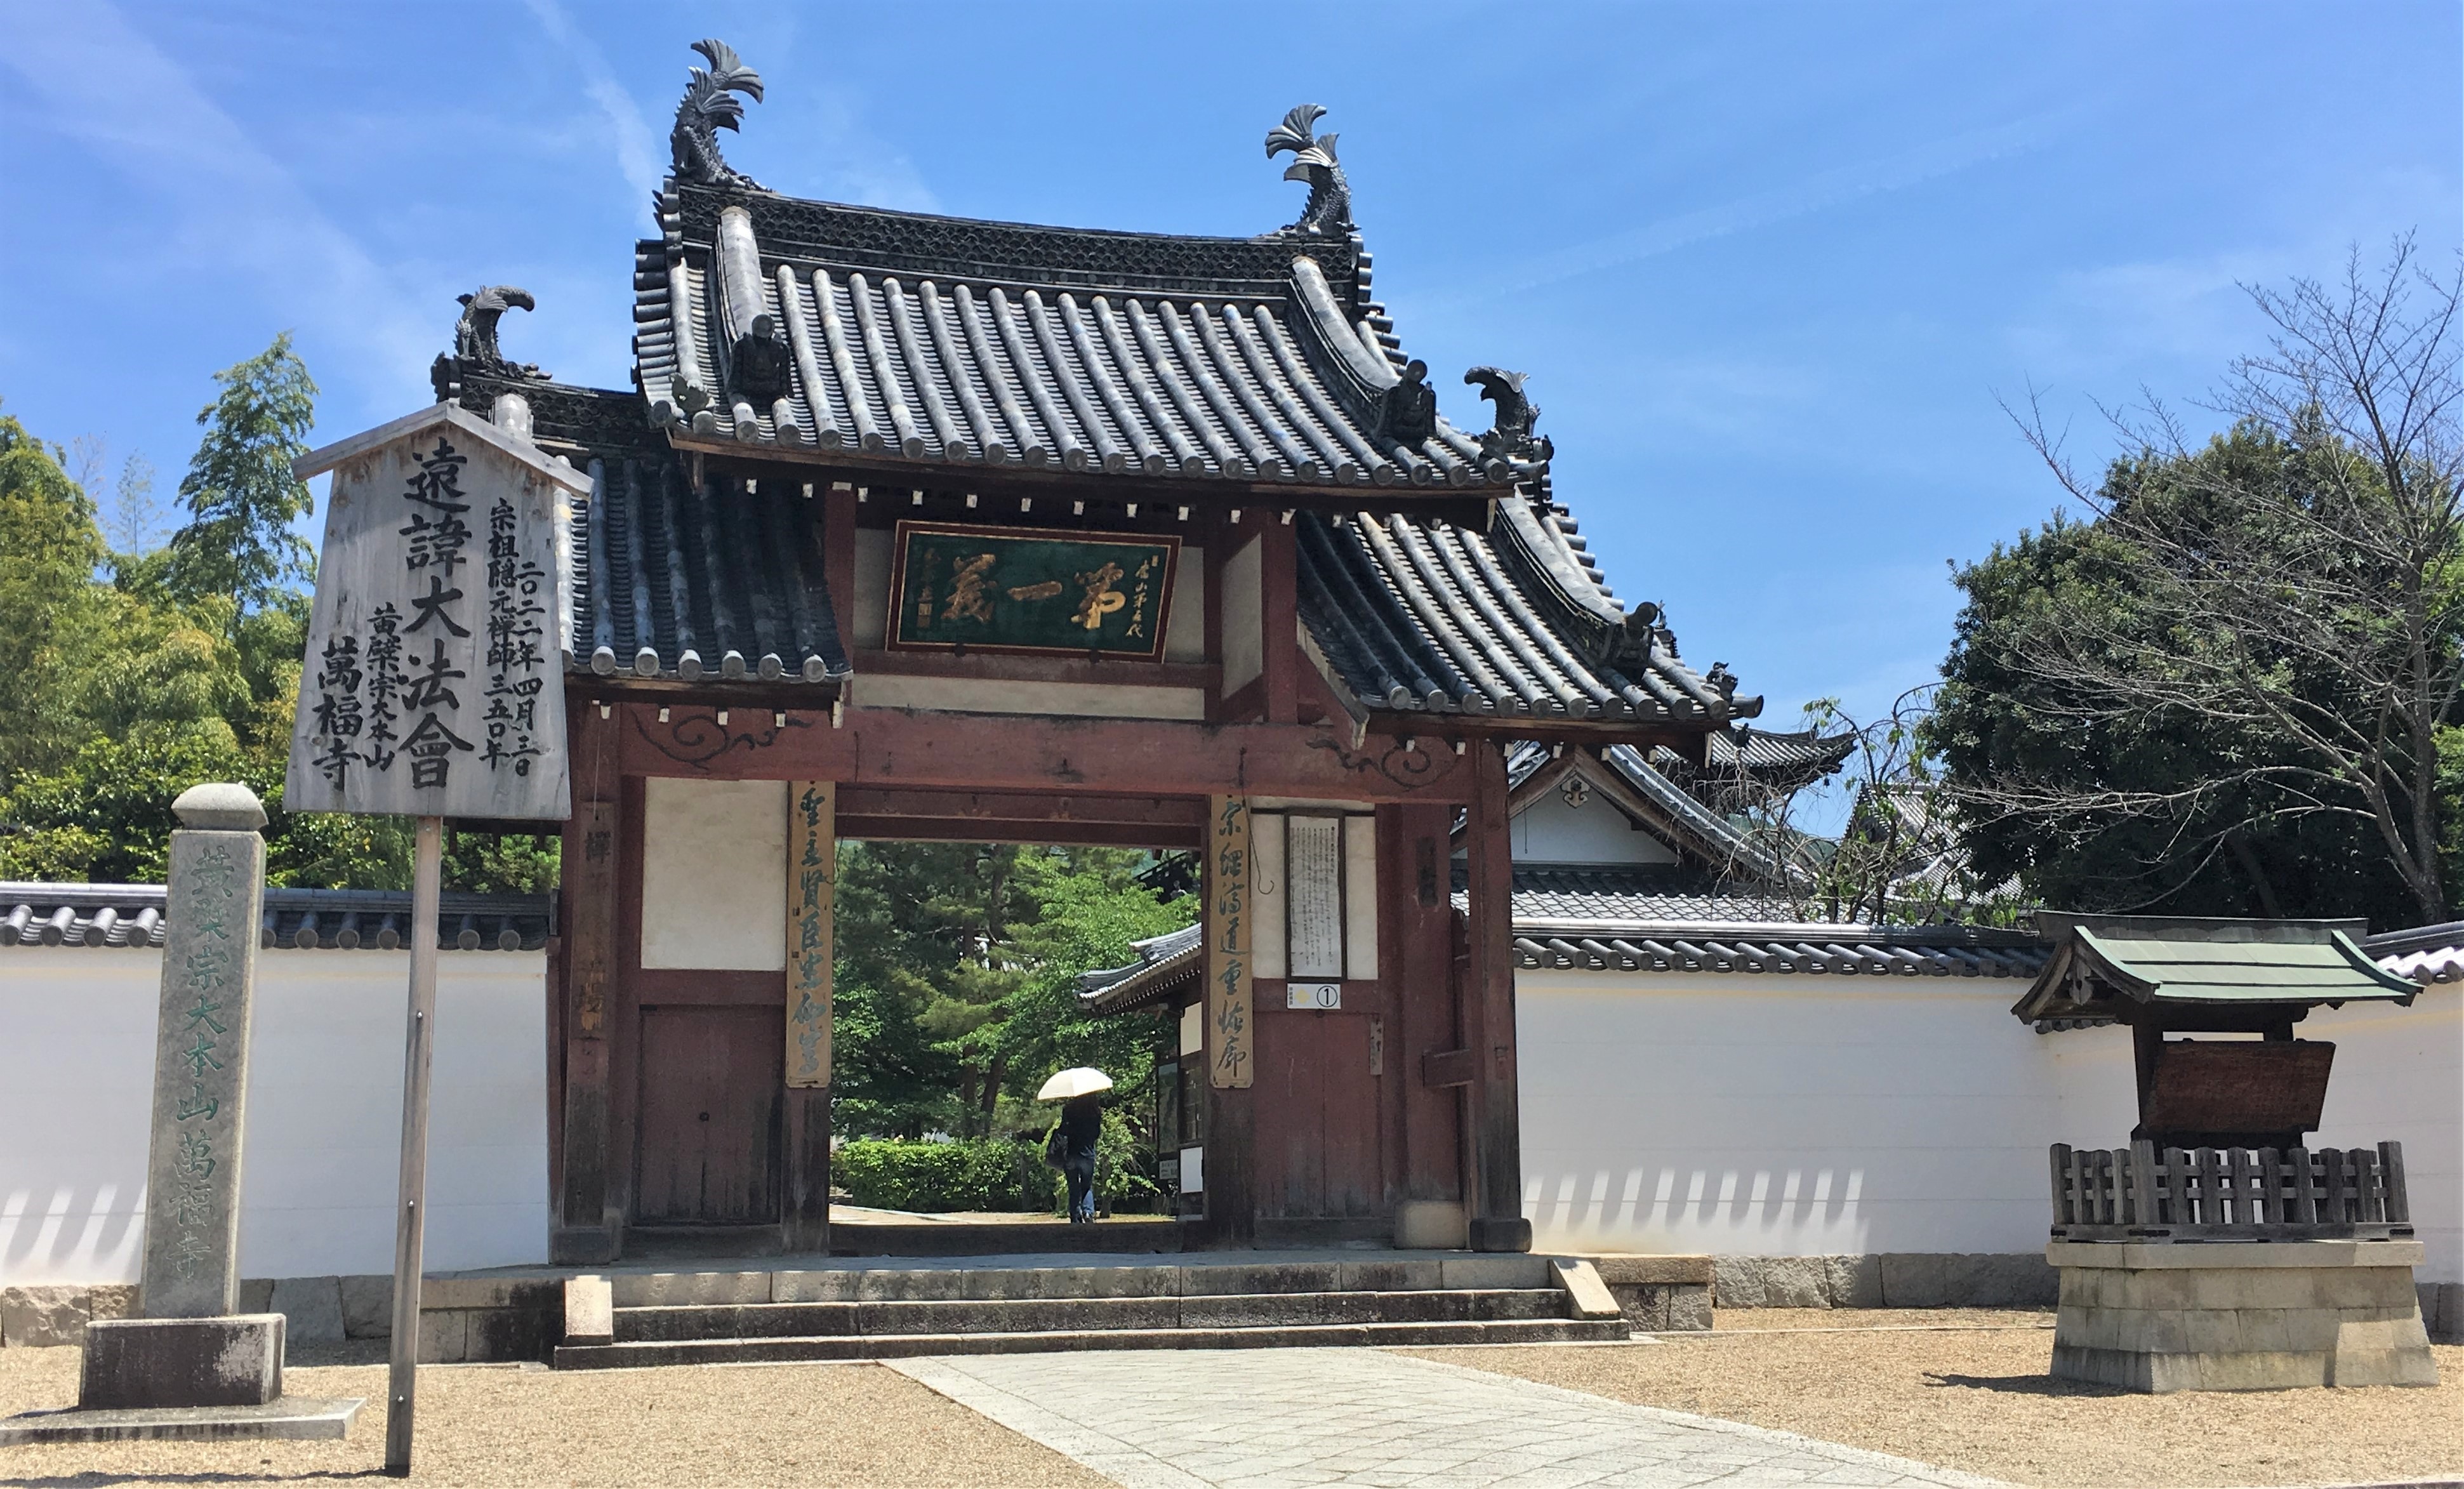 Pairo style gate of ancient Obakusan Manpuku-ji Temple